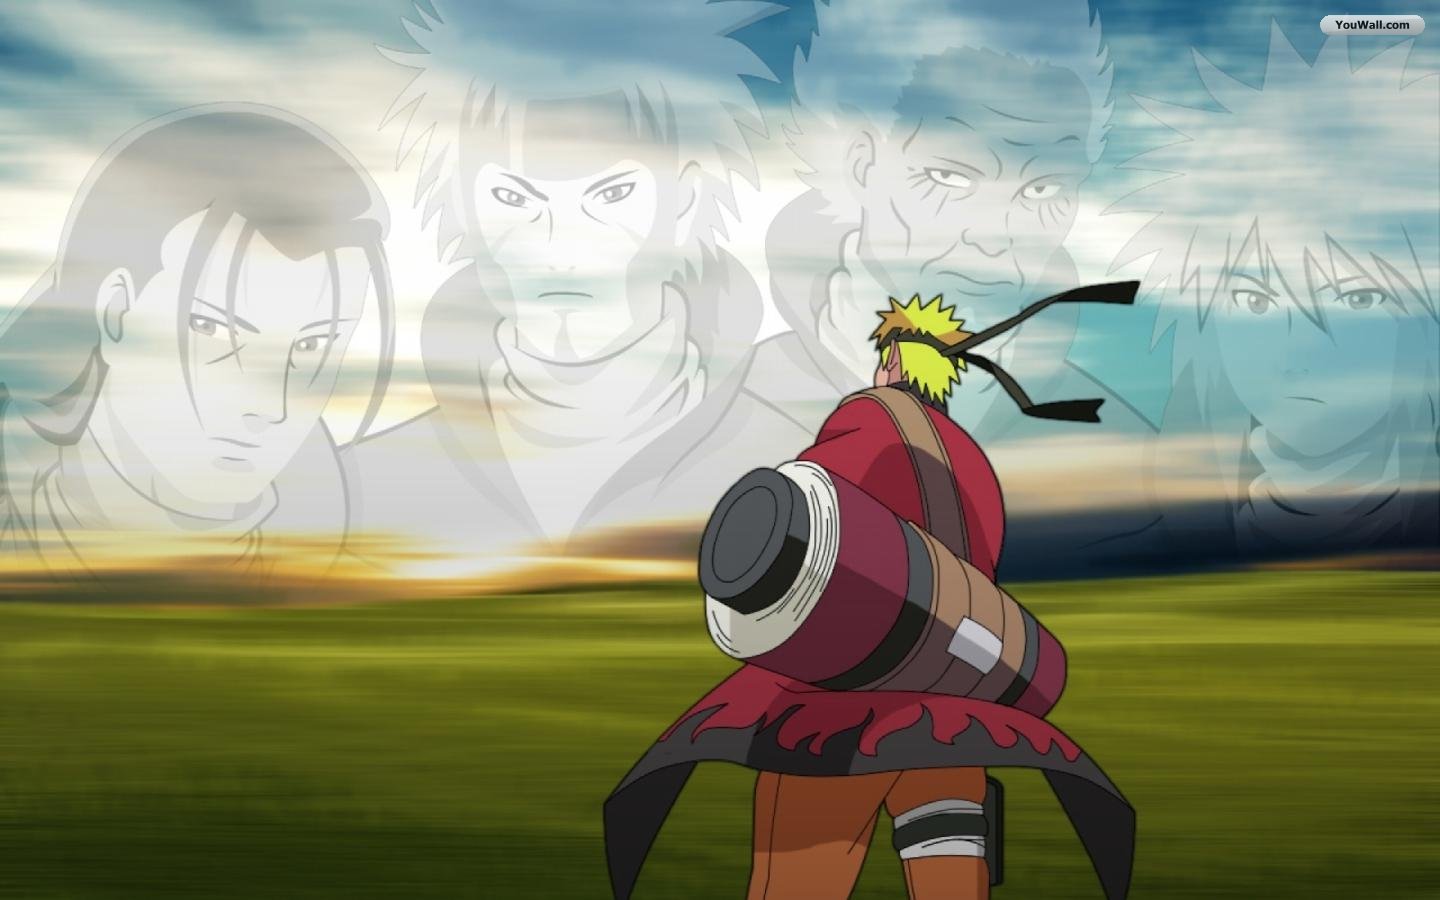 Naruto Hokage - Tướng quân của Hidden Leaf Village là một trong những nhân vật được yêu thích nhất trong anime Naruto. Với bộ sưu tập hình nền đầy sức mạnh này, hãy để Hokage Naruto làm nền tảng hoàn hảo cho màn hình của bạn!